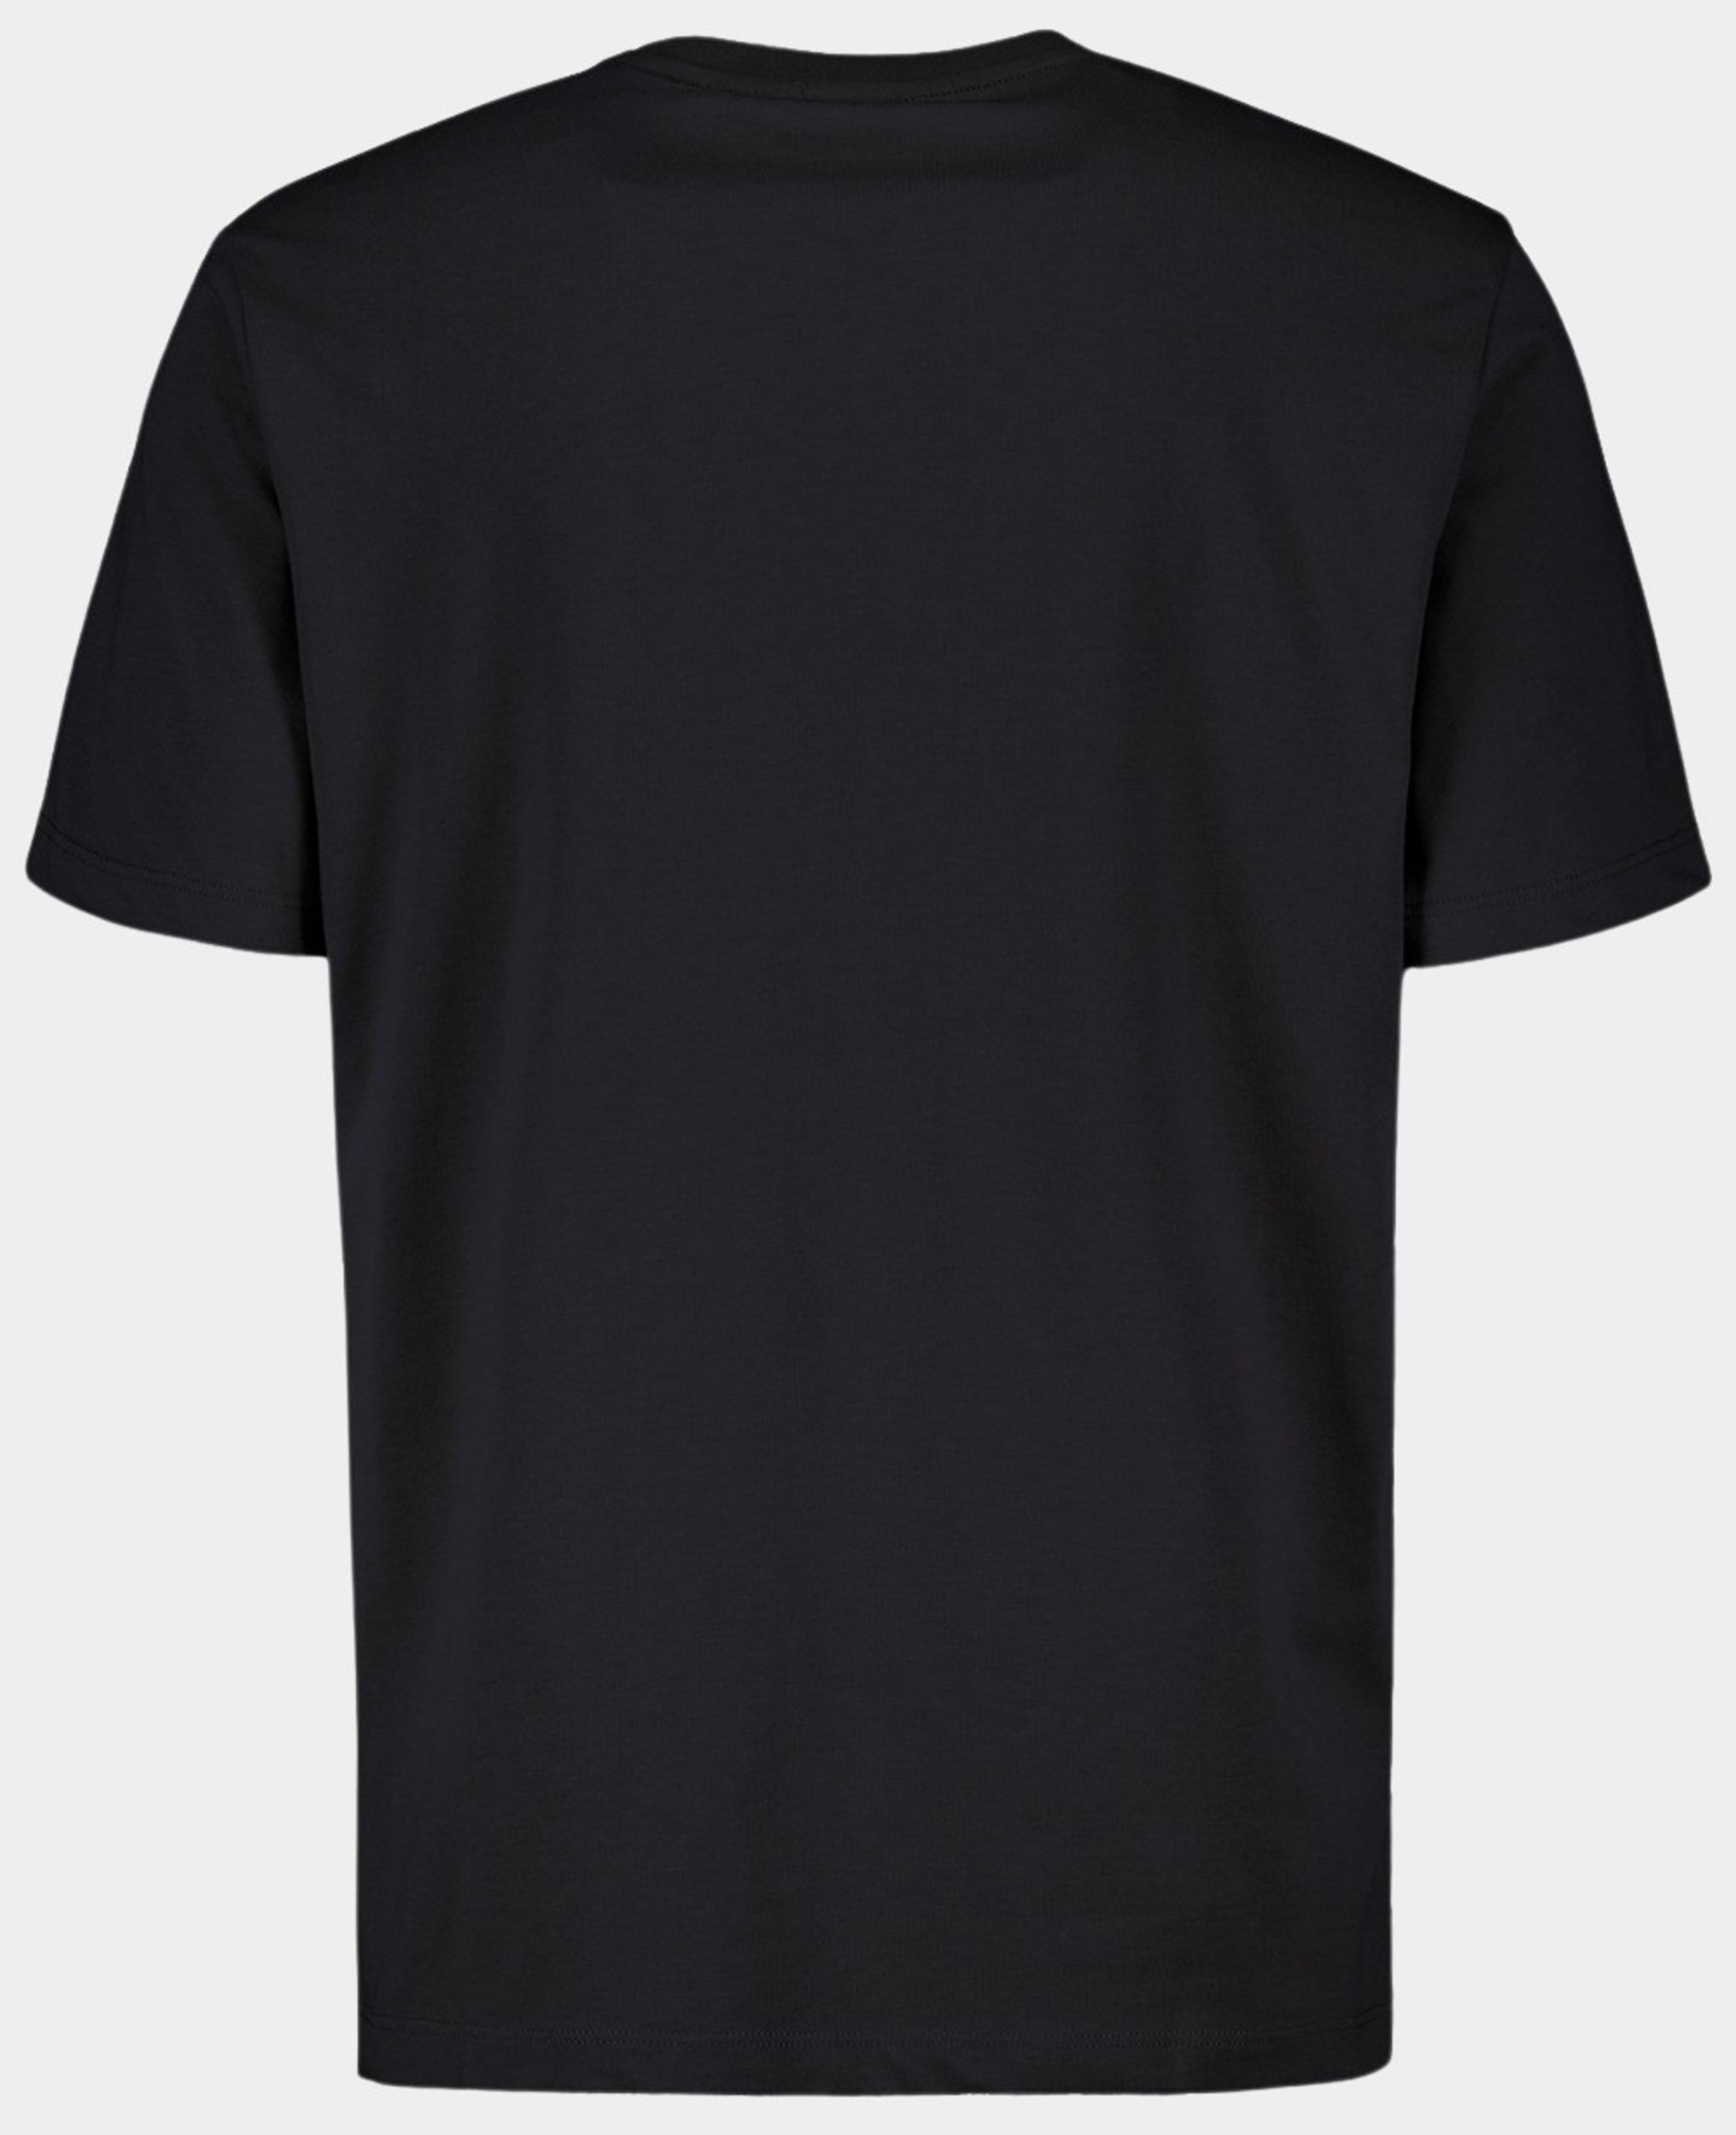 Airforce T-shirt korte mouw Zwart Airfoce Basic T-shirt TBM0888/901